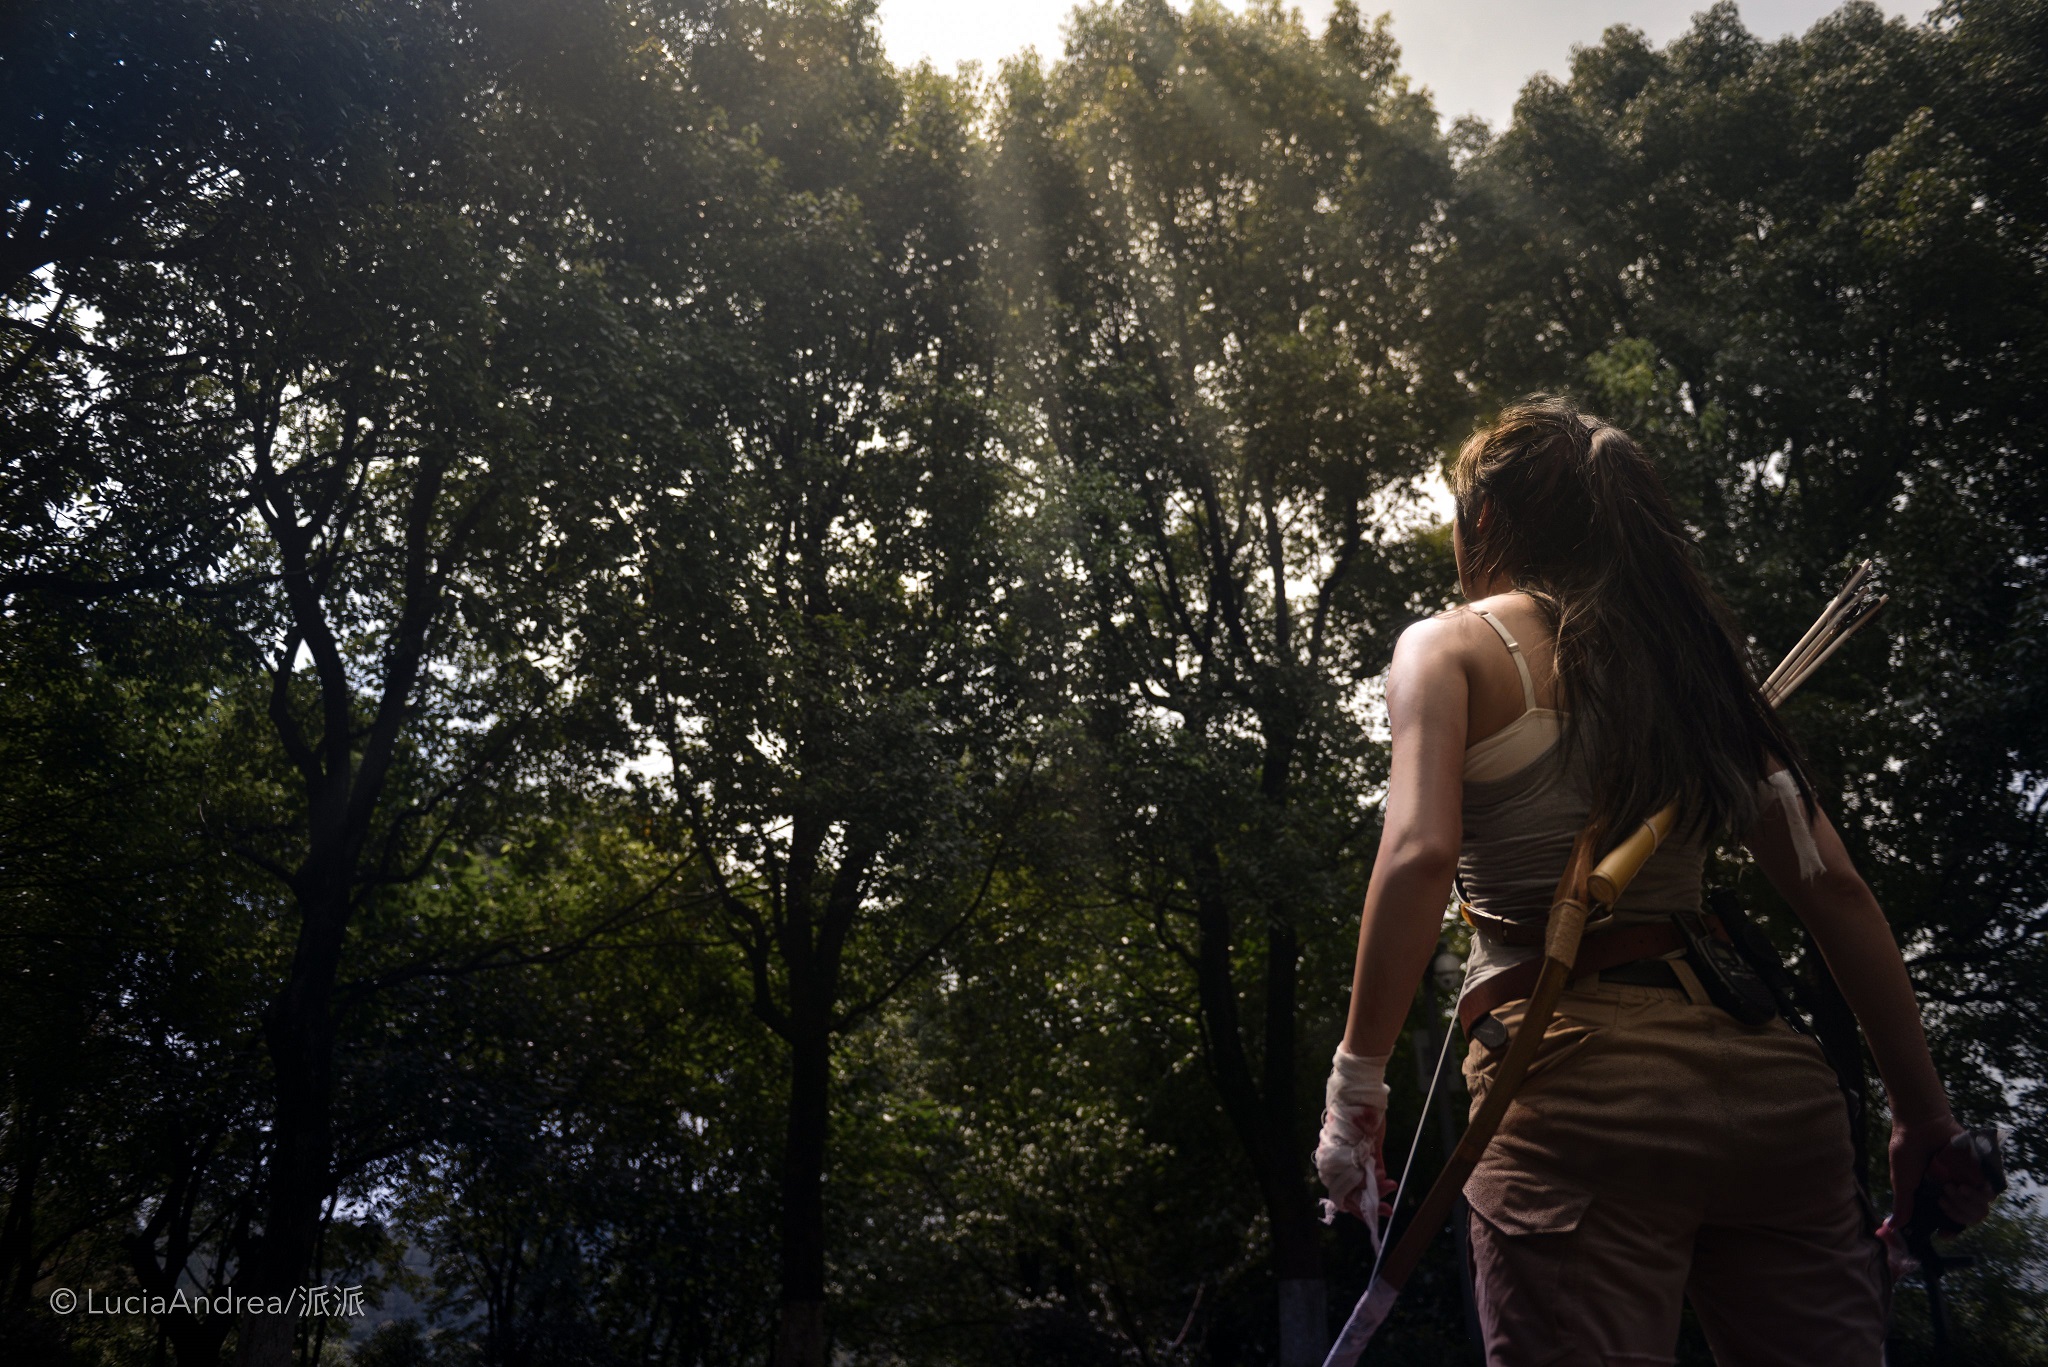 คอสเพลย์ Lara Croft ในเกม Tomb Raider จาก LuciaSAndrea